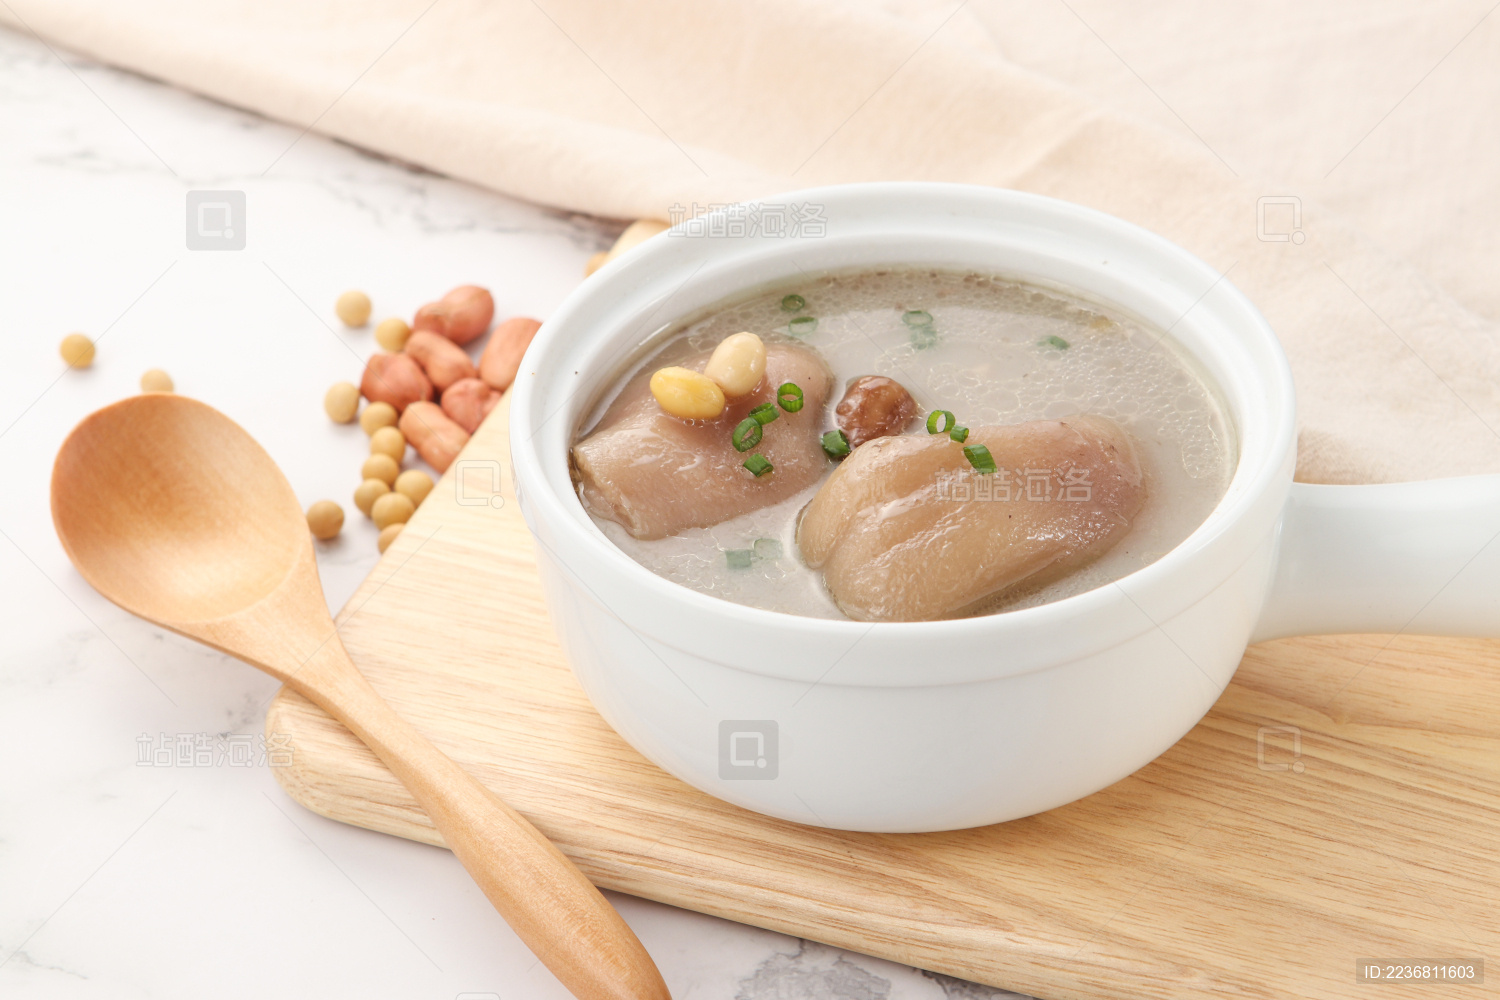 蹄花蜿豆芽汤,蹄花蜿豆芽汤的家常做法 - 美食杰蹄花蜿豆芽汤做法大全